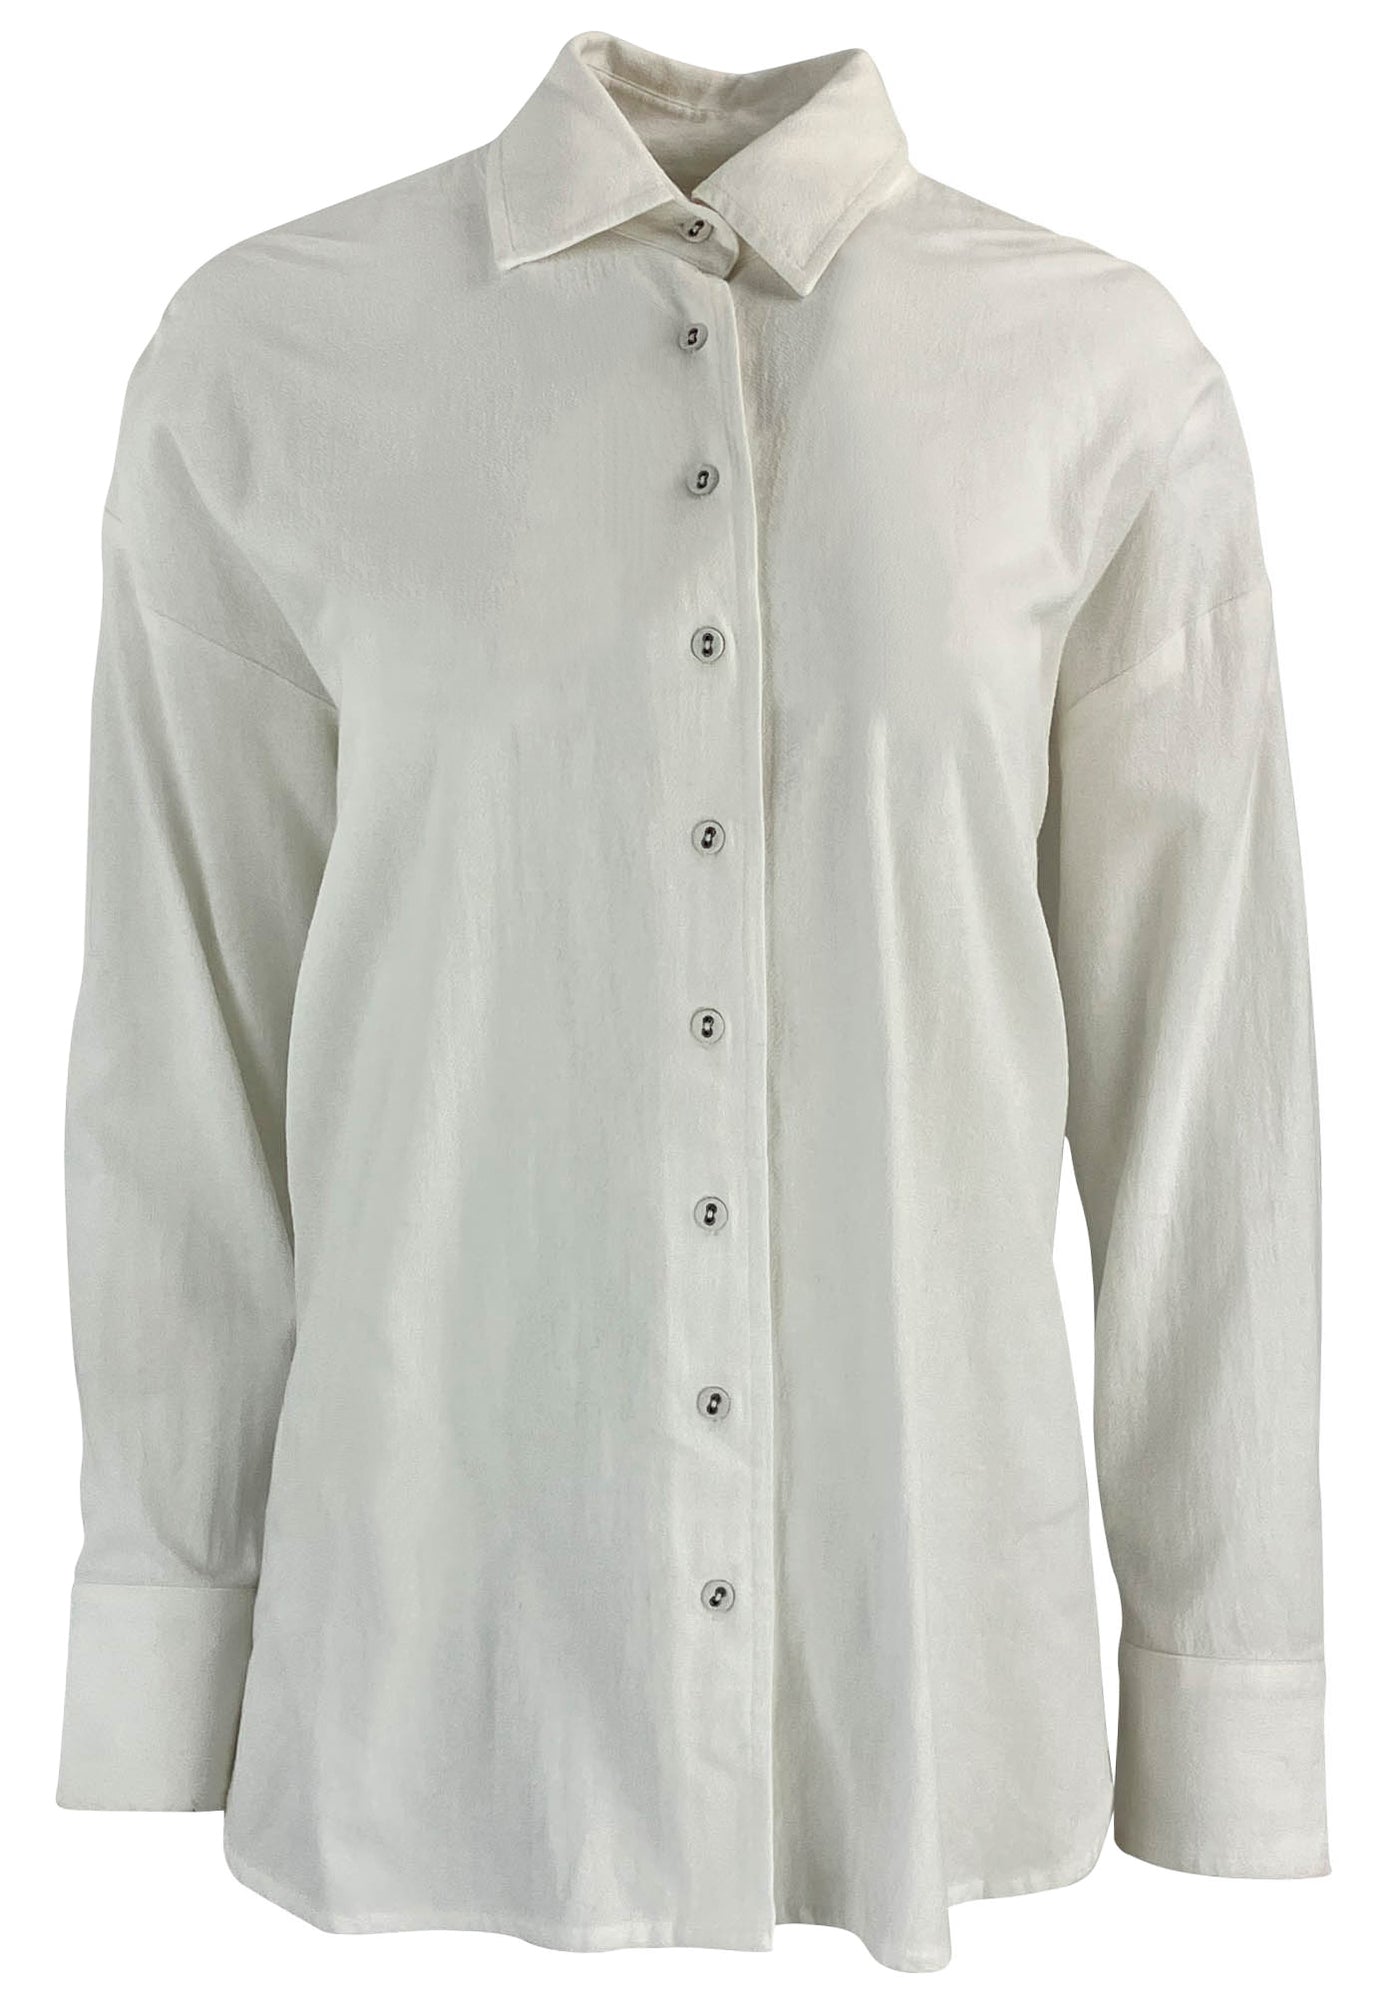 Xírena Peyton Shirt in White - Discounts on Xírena at UAL